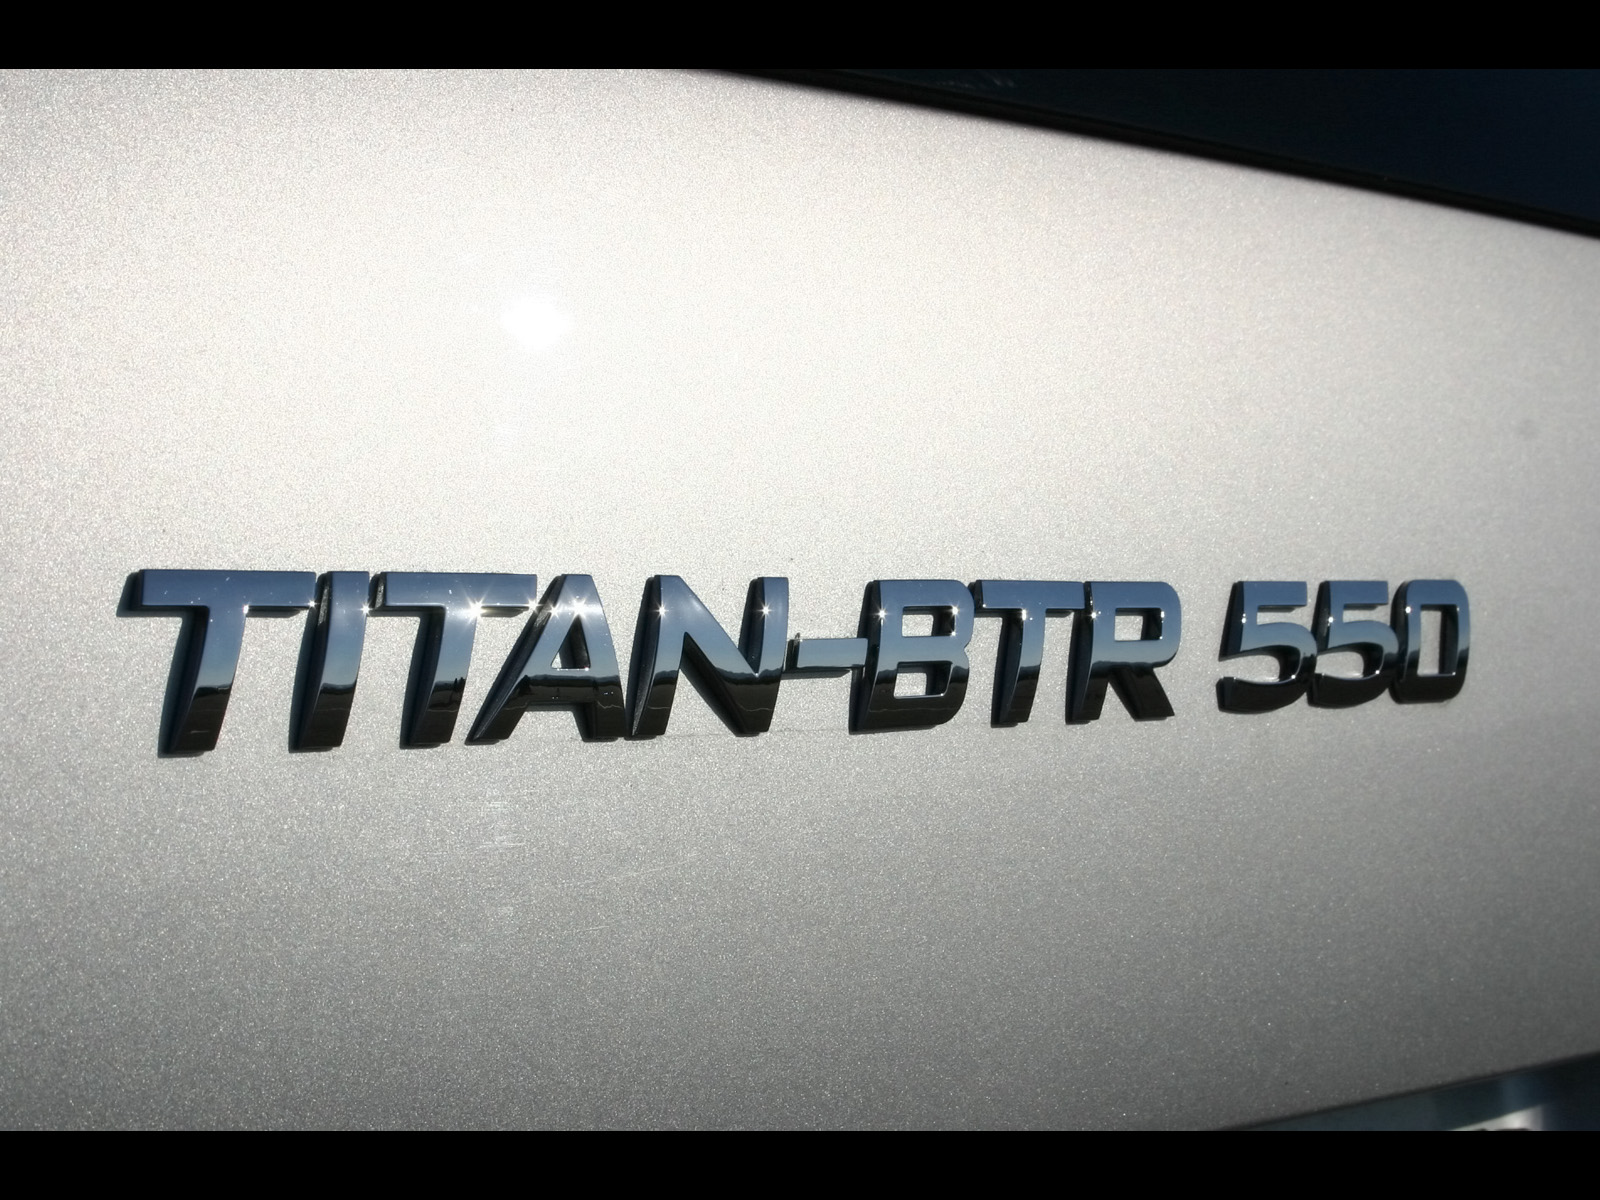 SpeedART Titan BTR 550 photo 52804